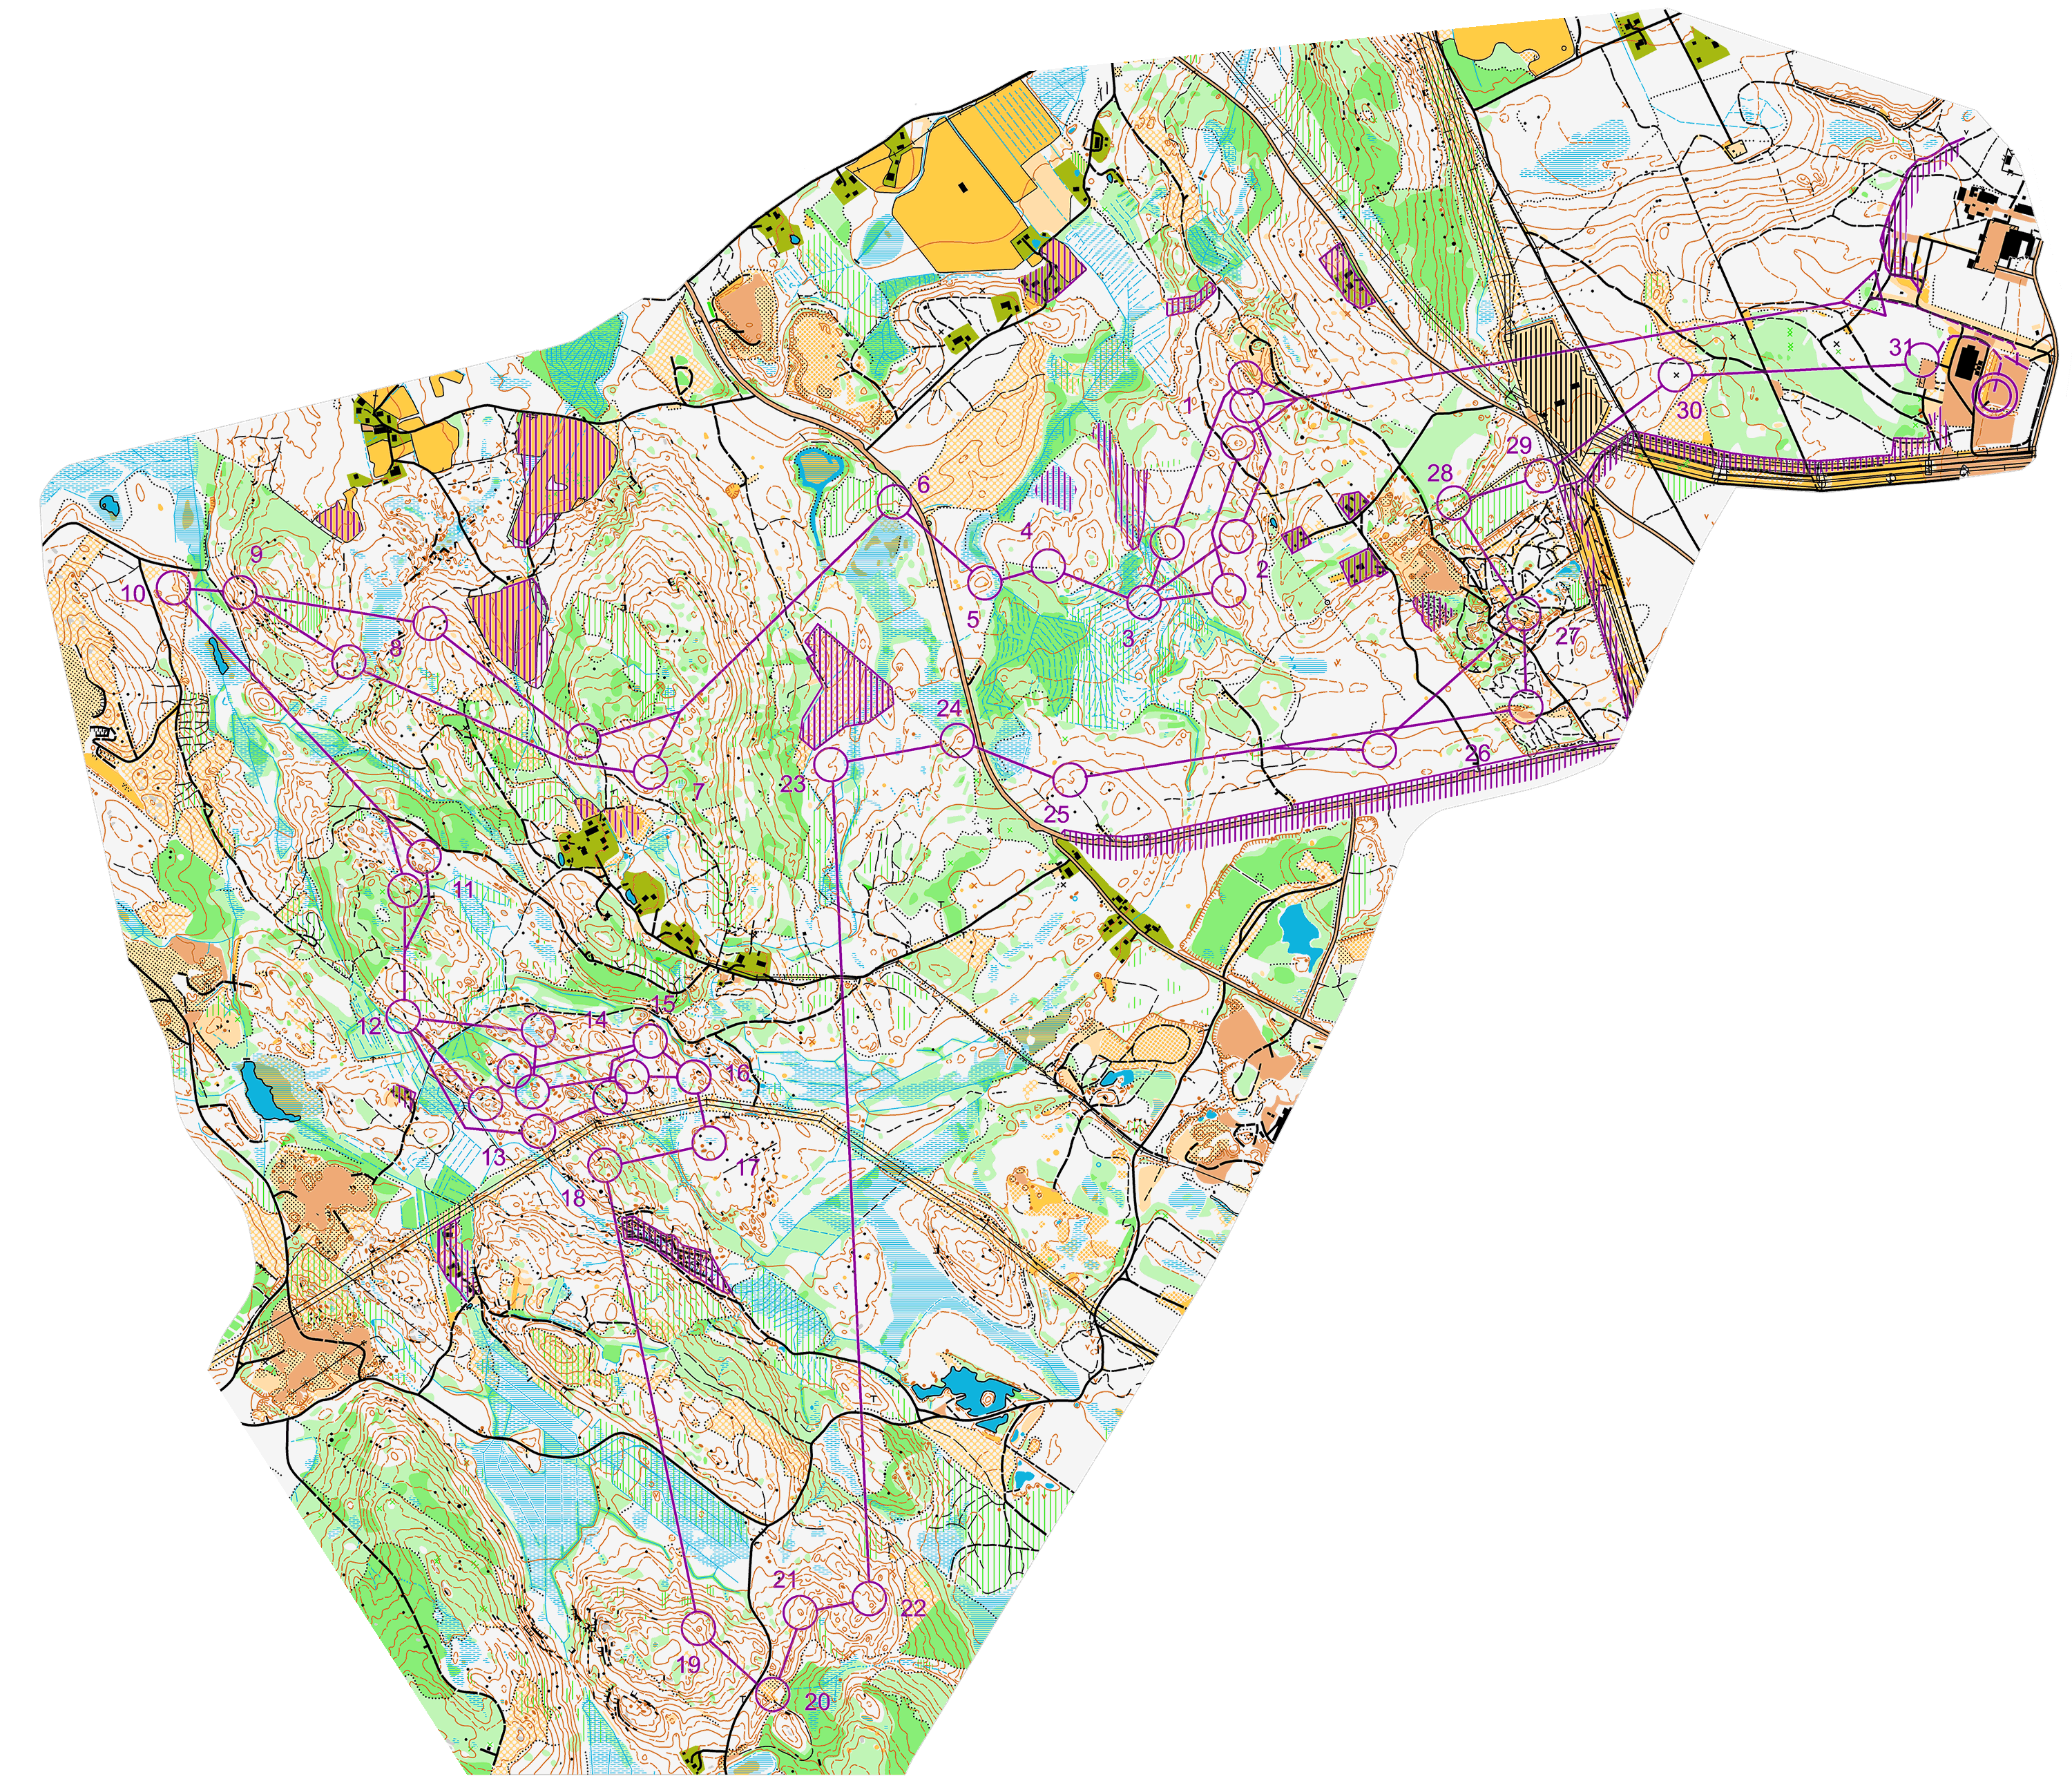 Jukola 2013 - 3. etappe (2013-06-16)